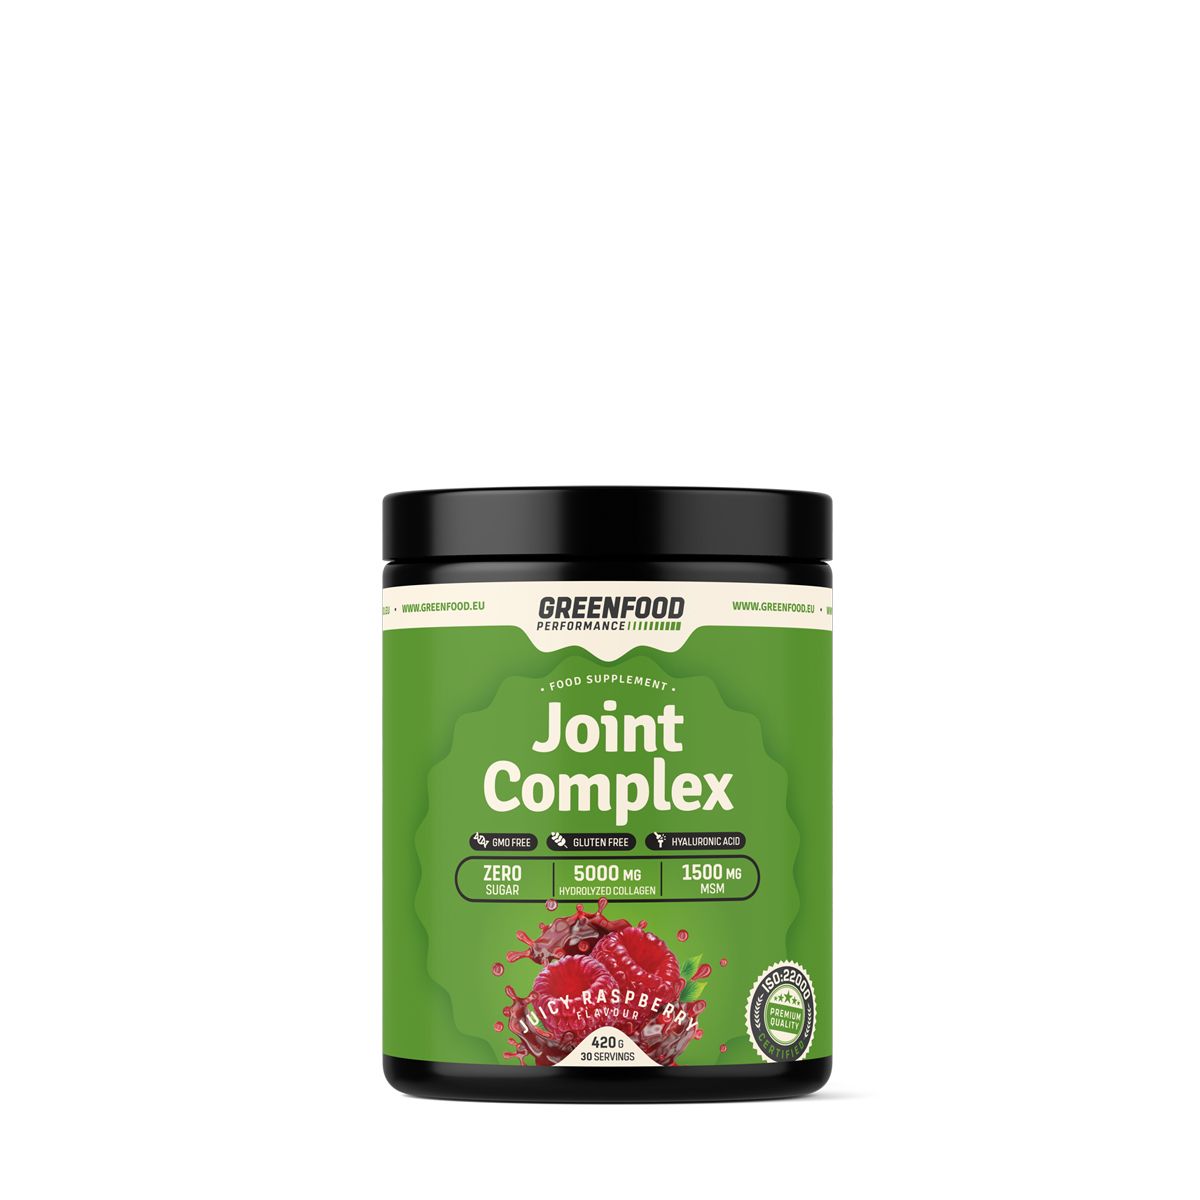 Ízületvédő komplex kollagénnel és hialuronsavval, GreenFood Performance Joint Complex, 420 g